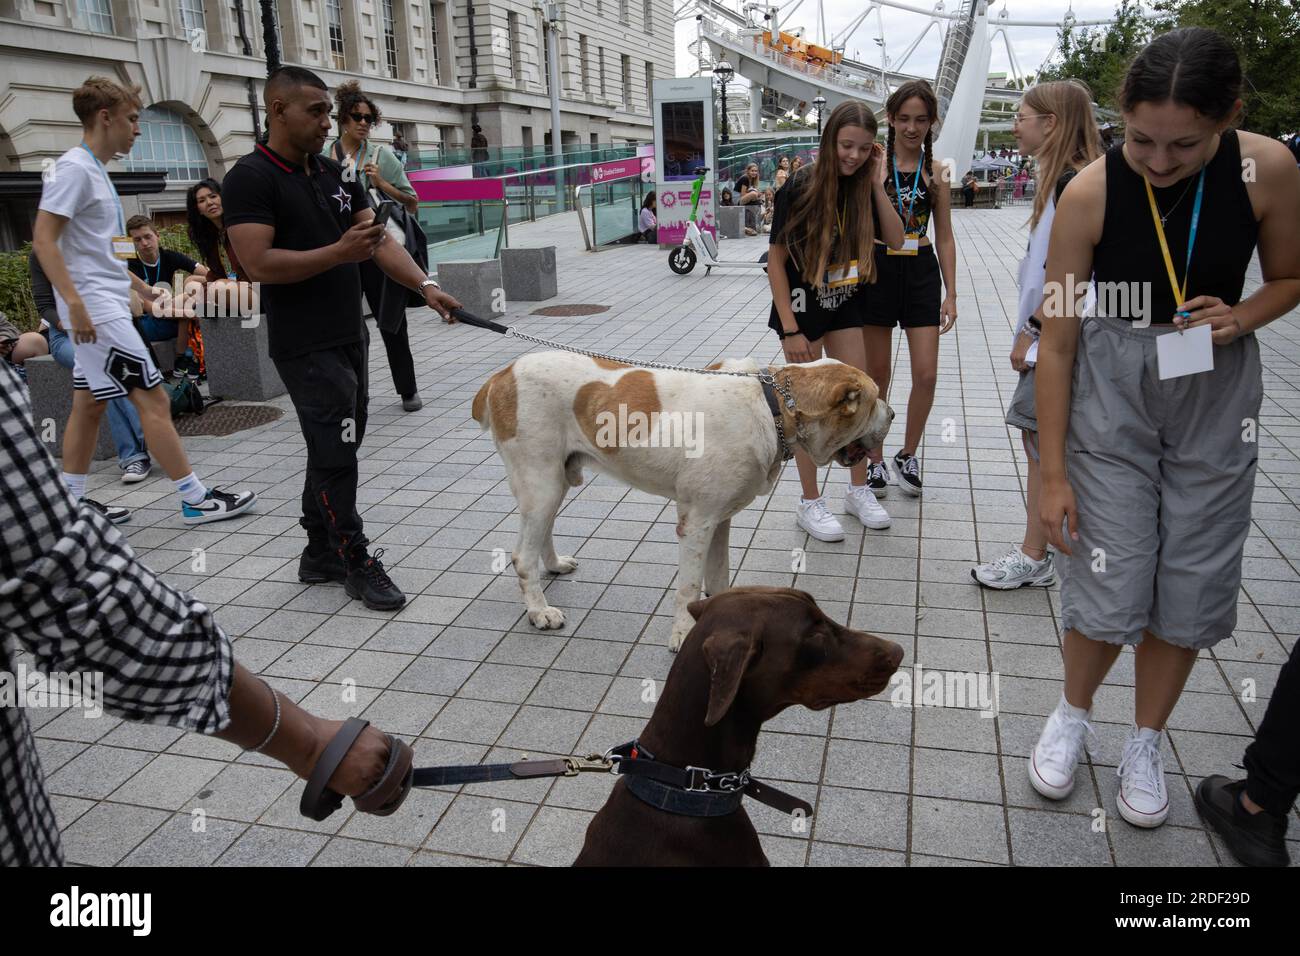 Les jeunes touristes se rassemblent autour de deux grands chiens alors qu'ils s'arrêtent pour les caresser sur le Southbank, Londres, Angleterre, Royaume-Uni Banque D'Images